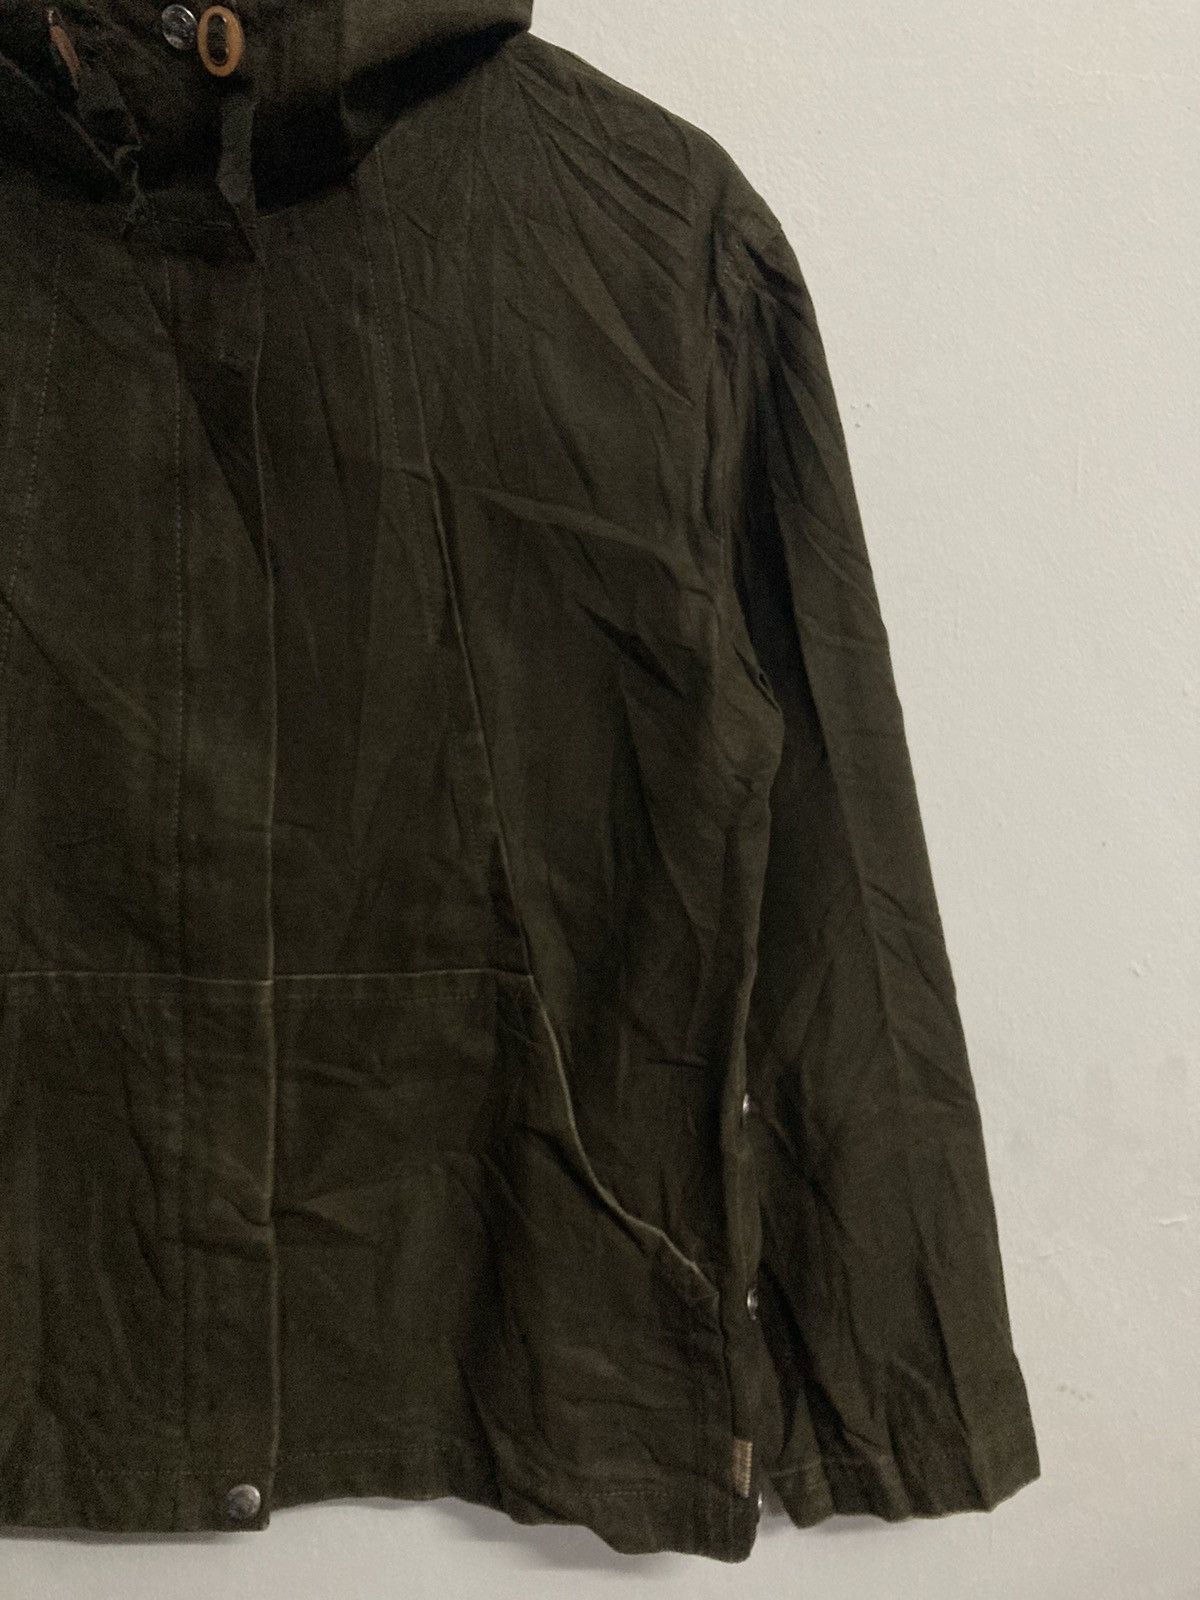 Burberrys Blue Label Hooded Jacket in Size 38 - 7